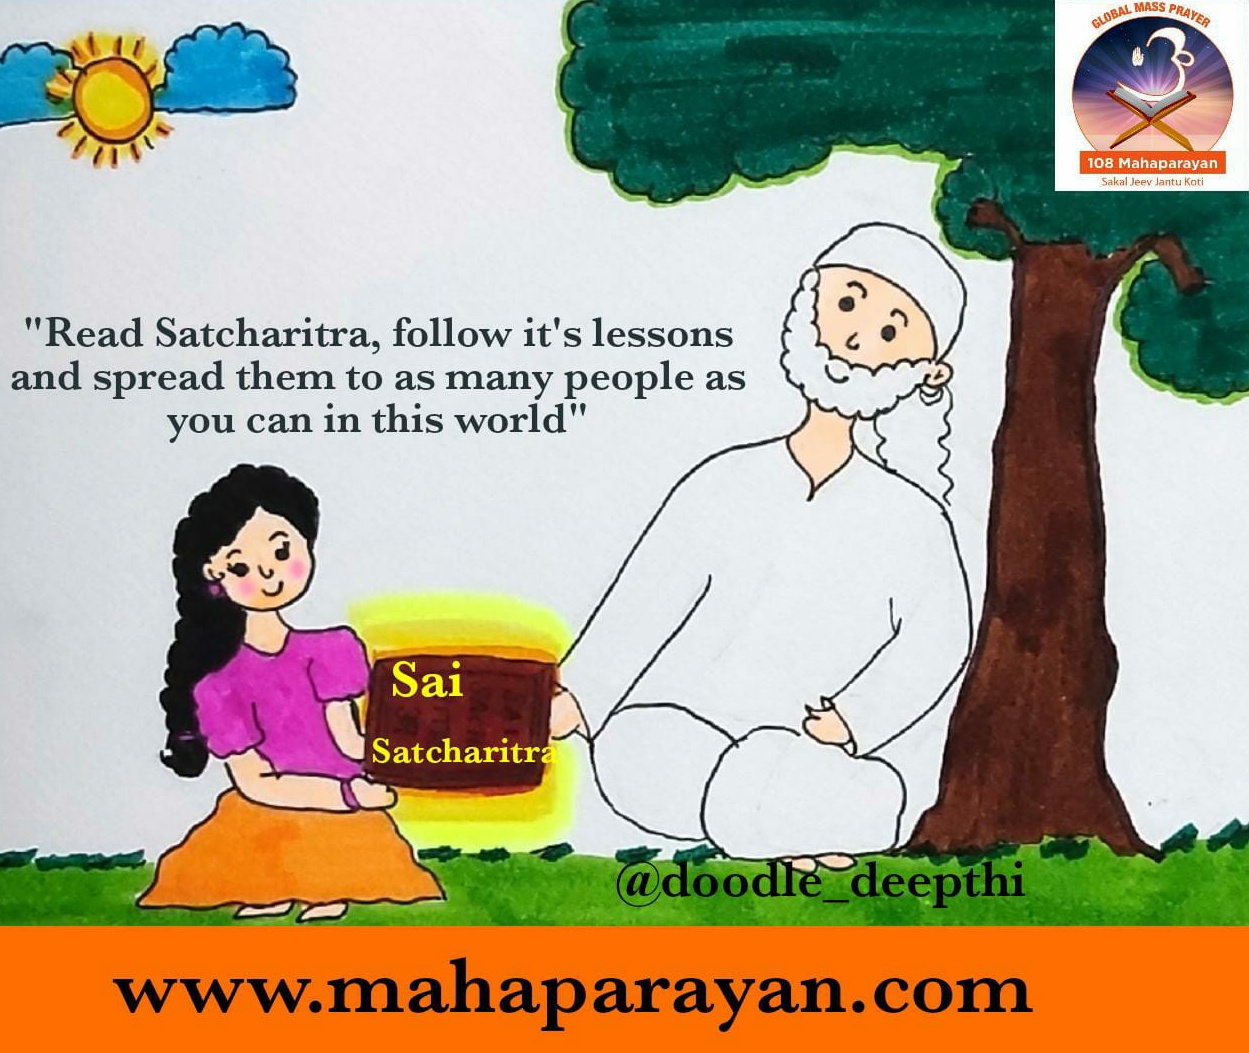 Global MahaParayan Miracles - Post 1495 - Global MahaParayan Experiences